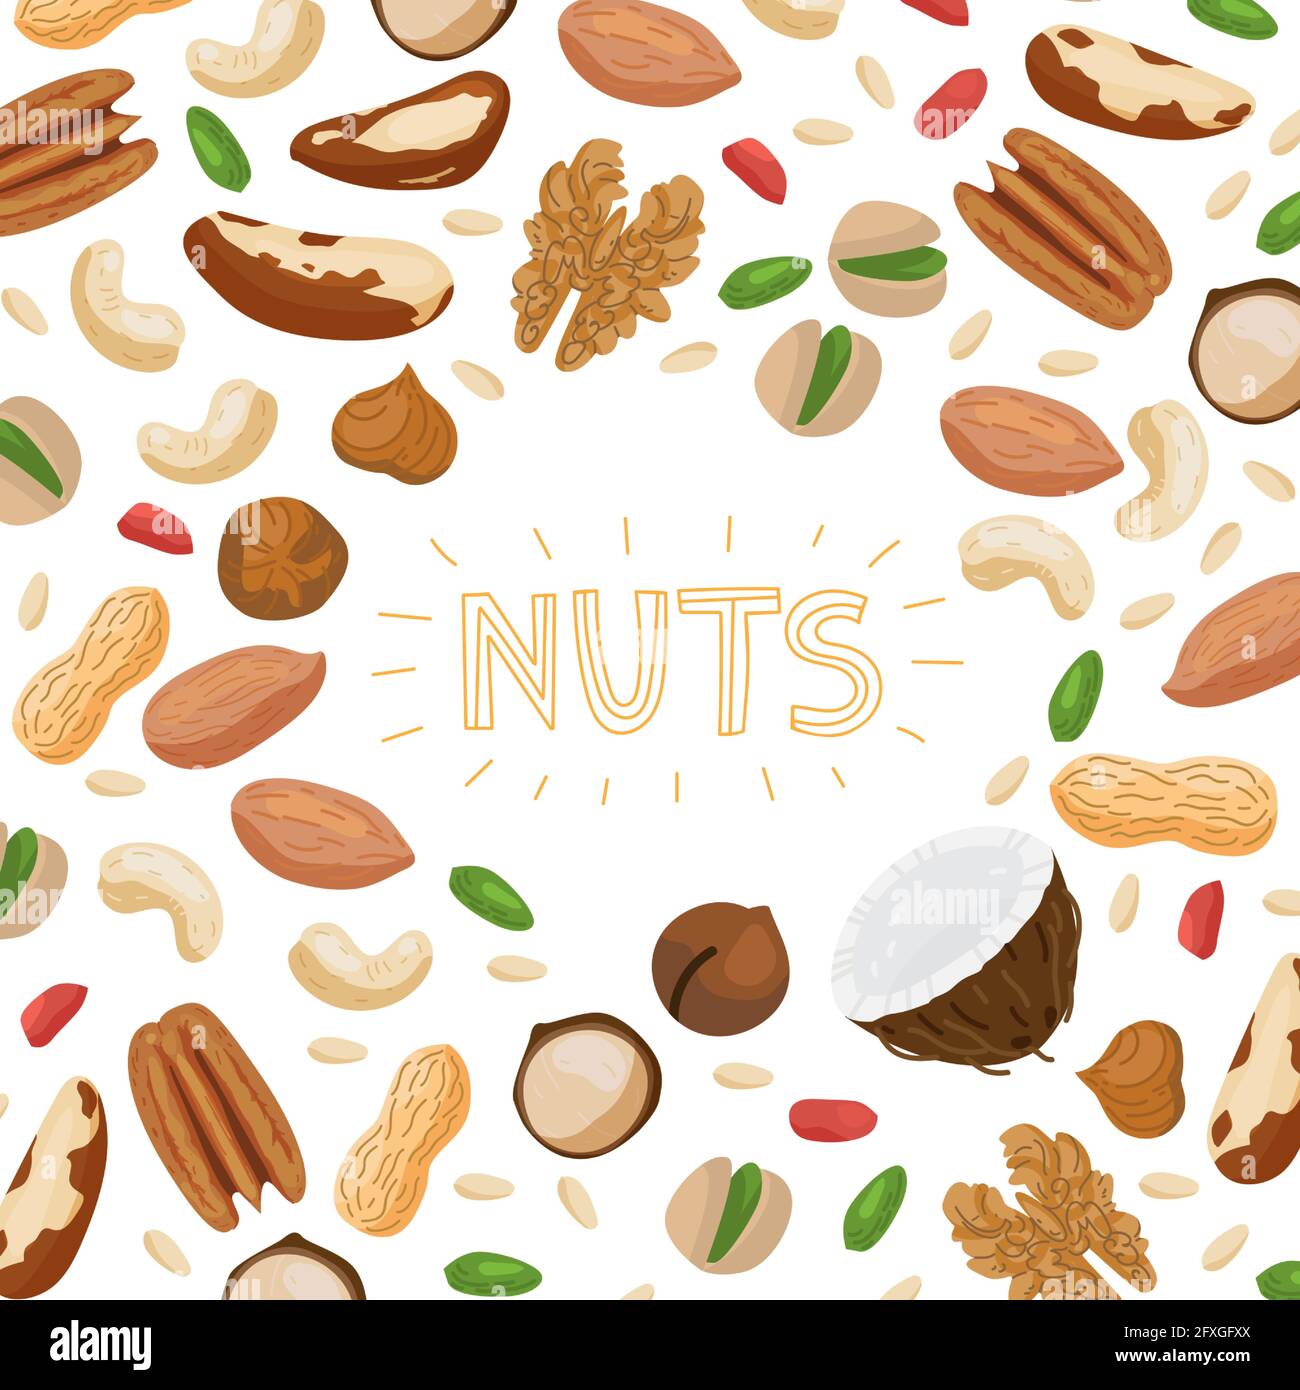 Ensemble de noix avec différents types de noix - noix du brésil, noix de coco, noix de cajou, noisettes, pistache, pacane, macadamia, arachide, noix de cèdre, amande, et châtaignier. V Illustration de Vecteur